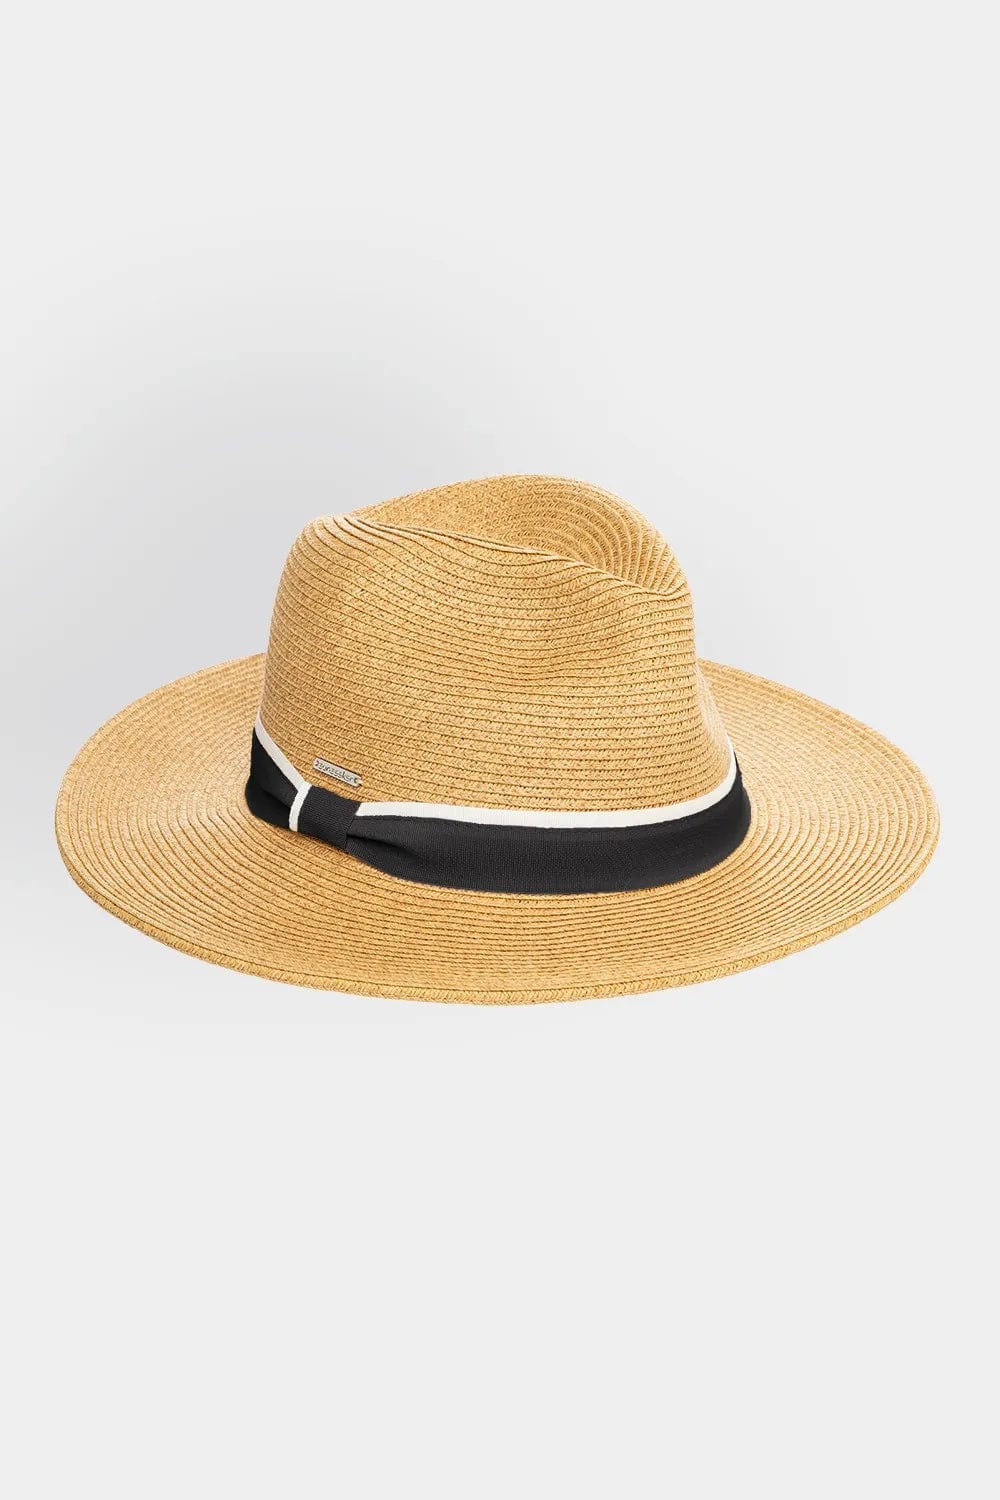 Byron Hat - Sunseeker - Splash Swimwear  - hat, hats, July22, Sunseeker - Splash Swimwear 